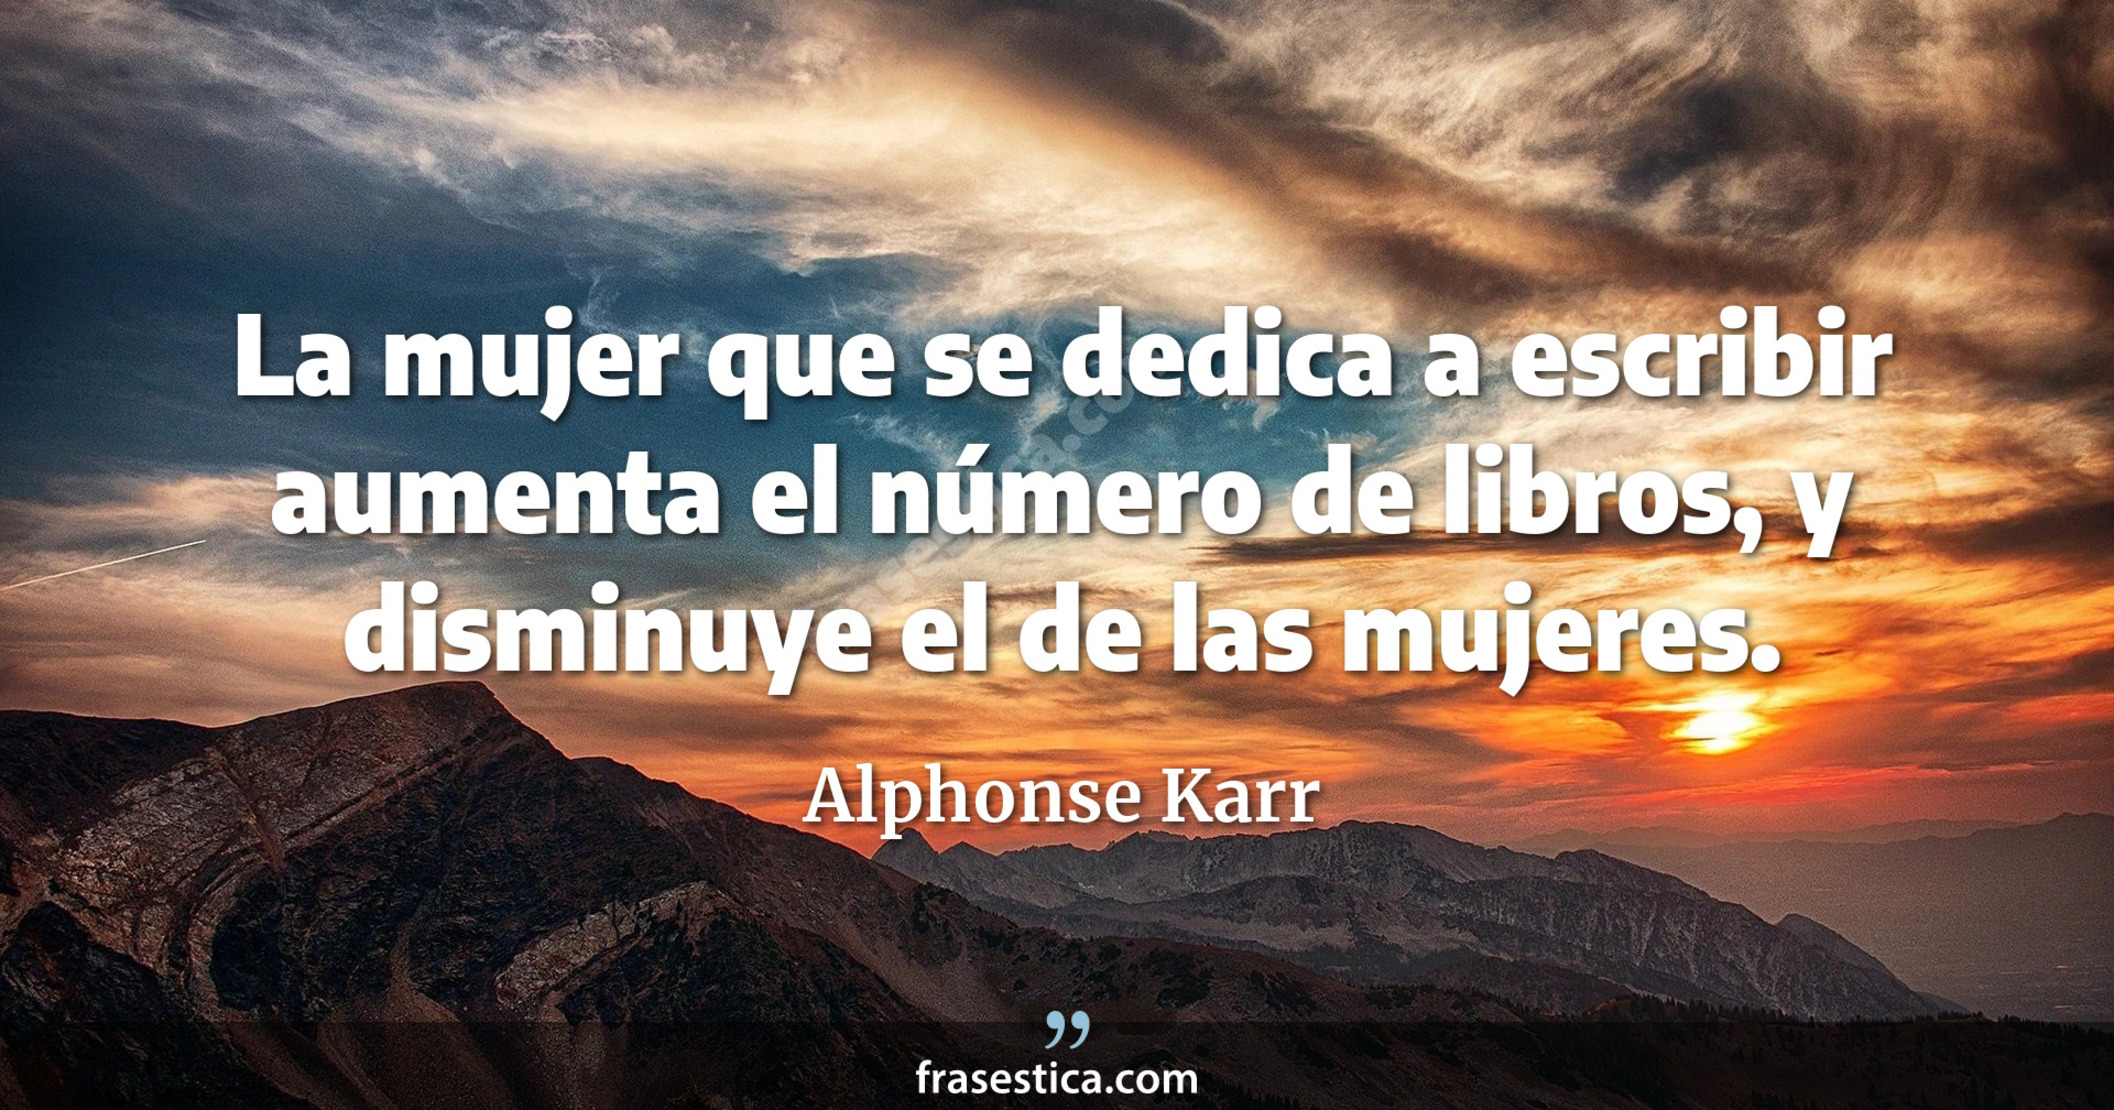 La mujer que se dedica a escribir aumenta el número de libros, y disminuye el de las mujeres. - Alphonse Karr